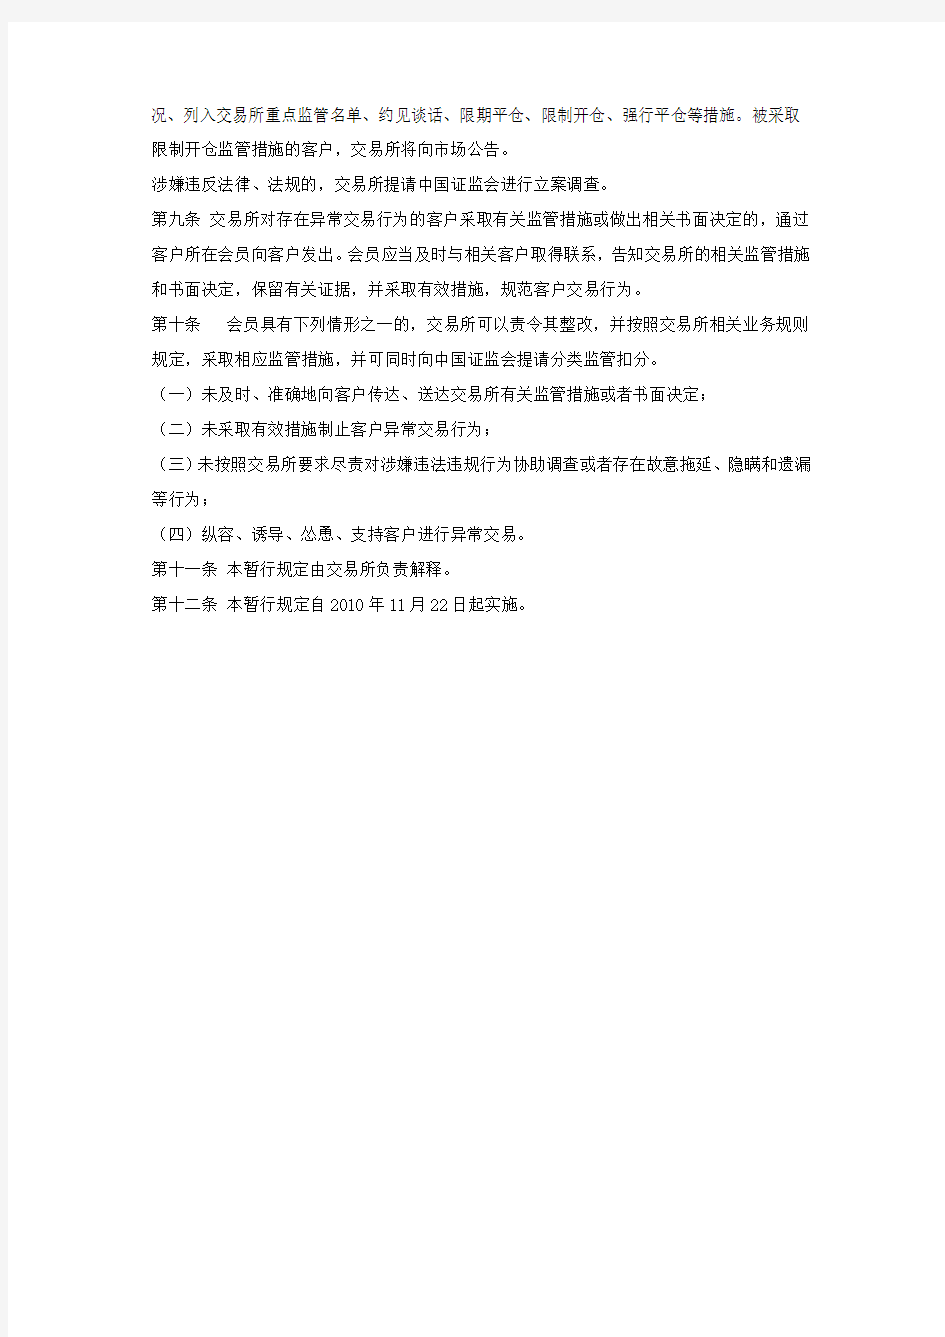 上海期货交易所异常交易监控暂行规定